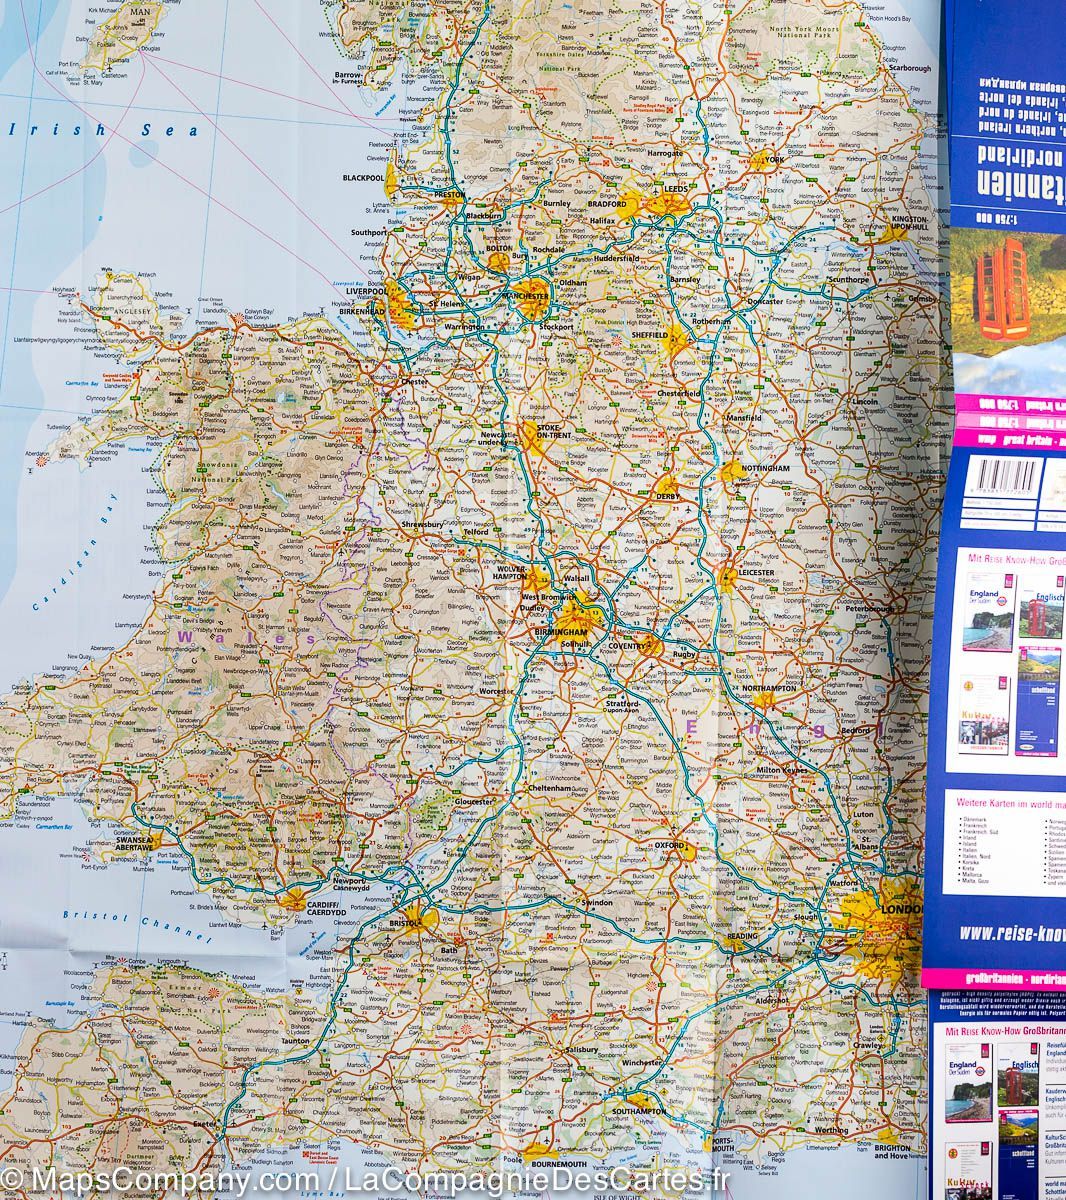 Carte routière - Grande Bretagne & Irlande du Nord | Reise Know How carte pliée Reise Know-How 